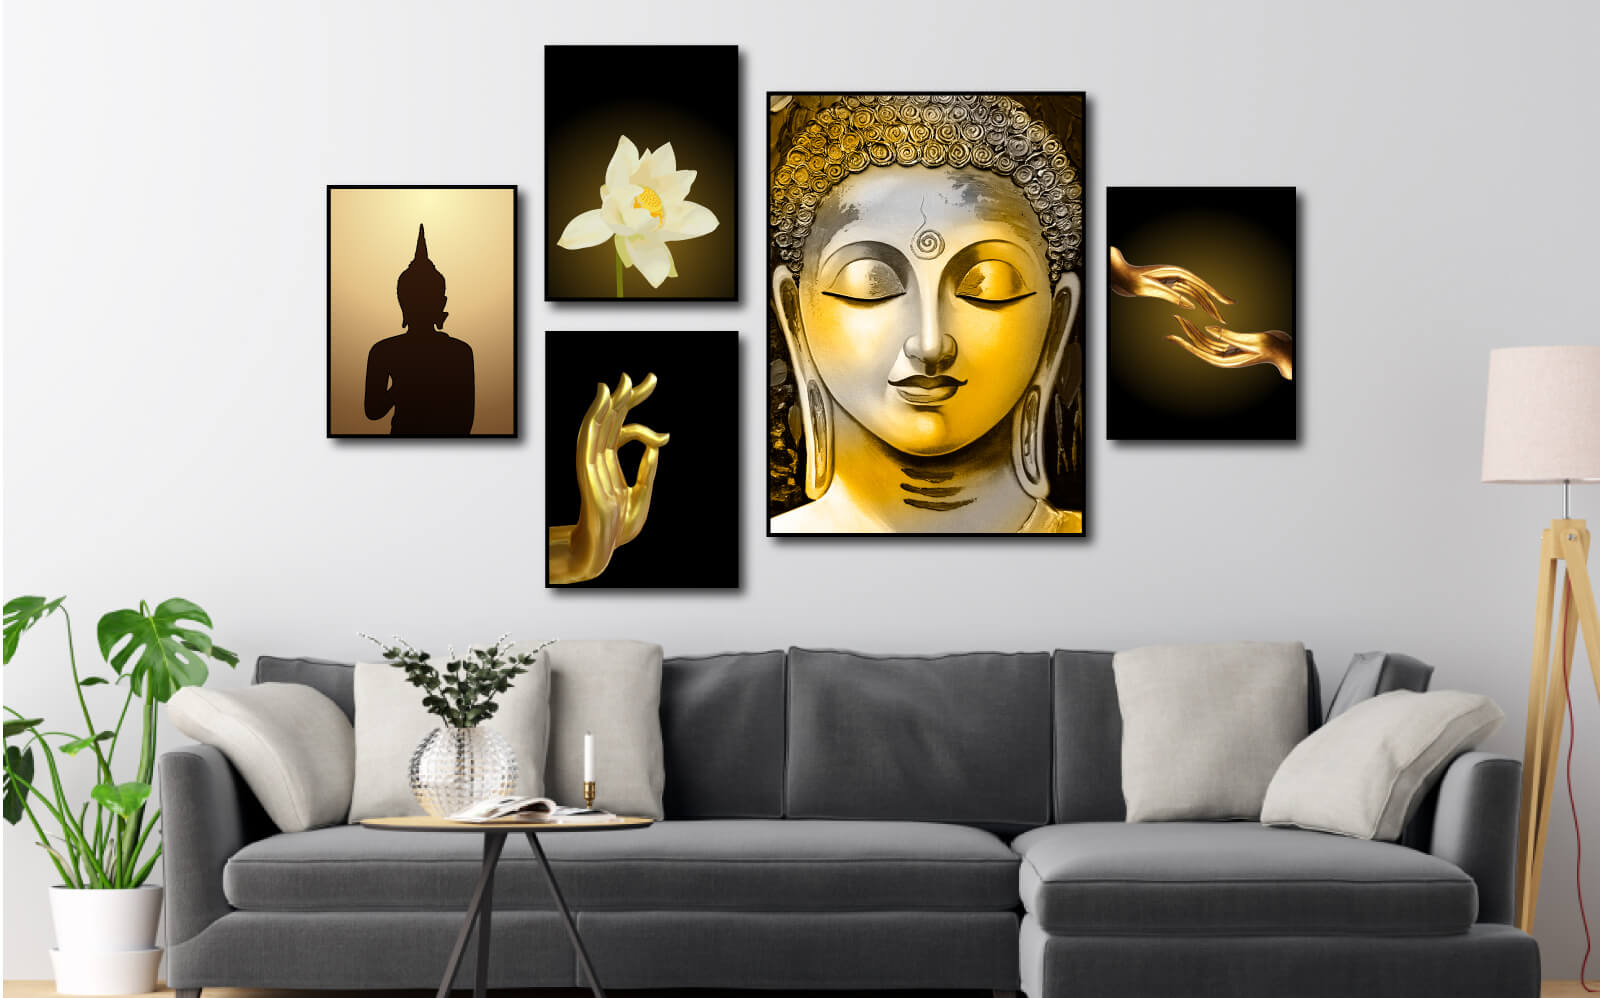 Tranh Phật là những bức tranh miêu tả chân dung các vị Phật như Phật A Di Đà, Phật Quan Âm hay Phật Di Lặc.